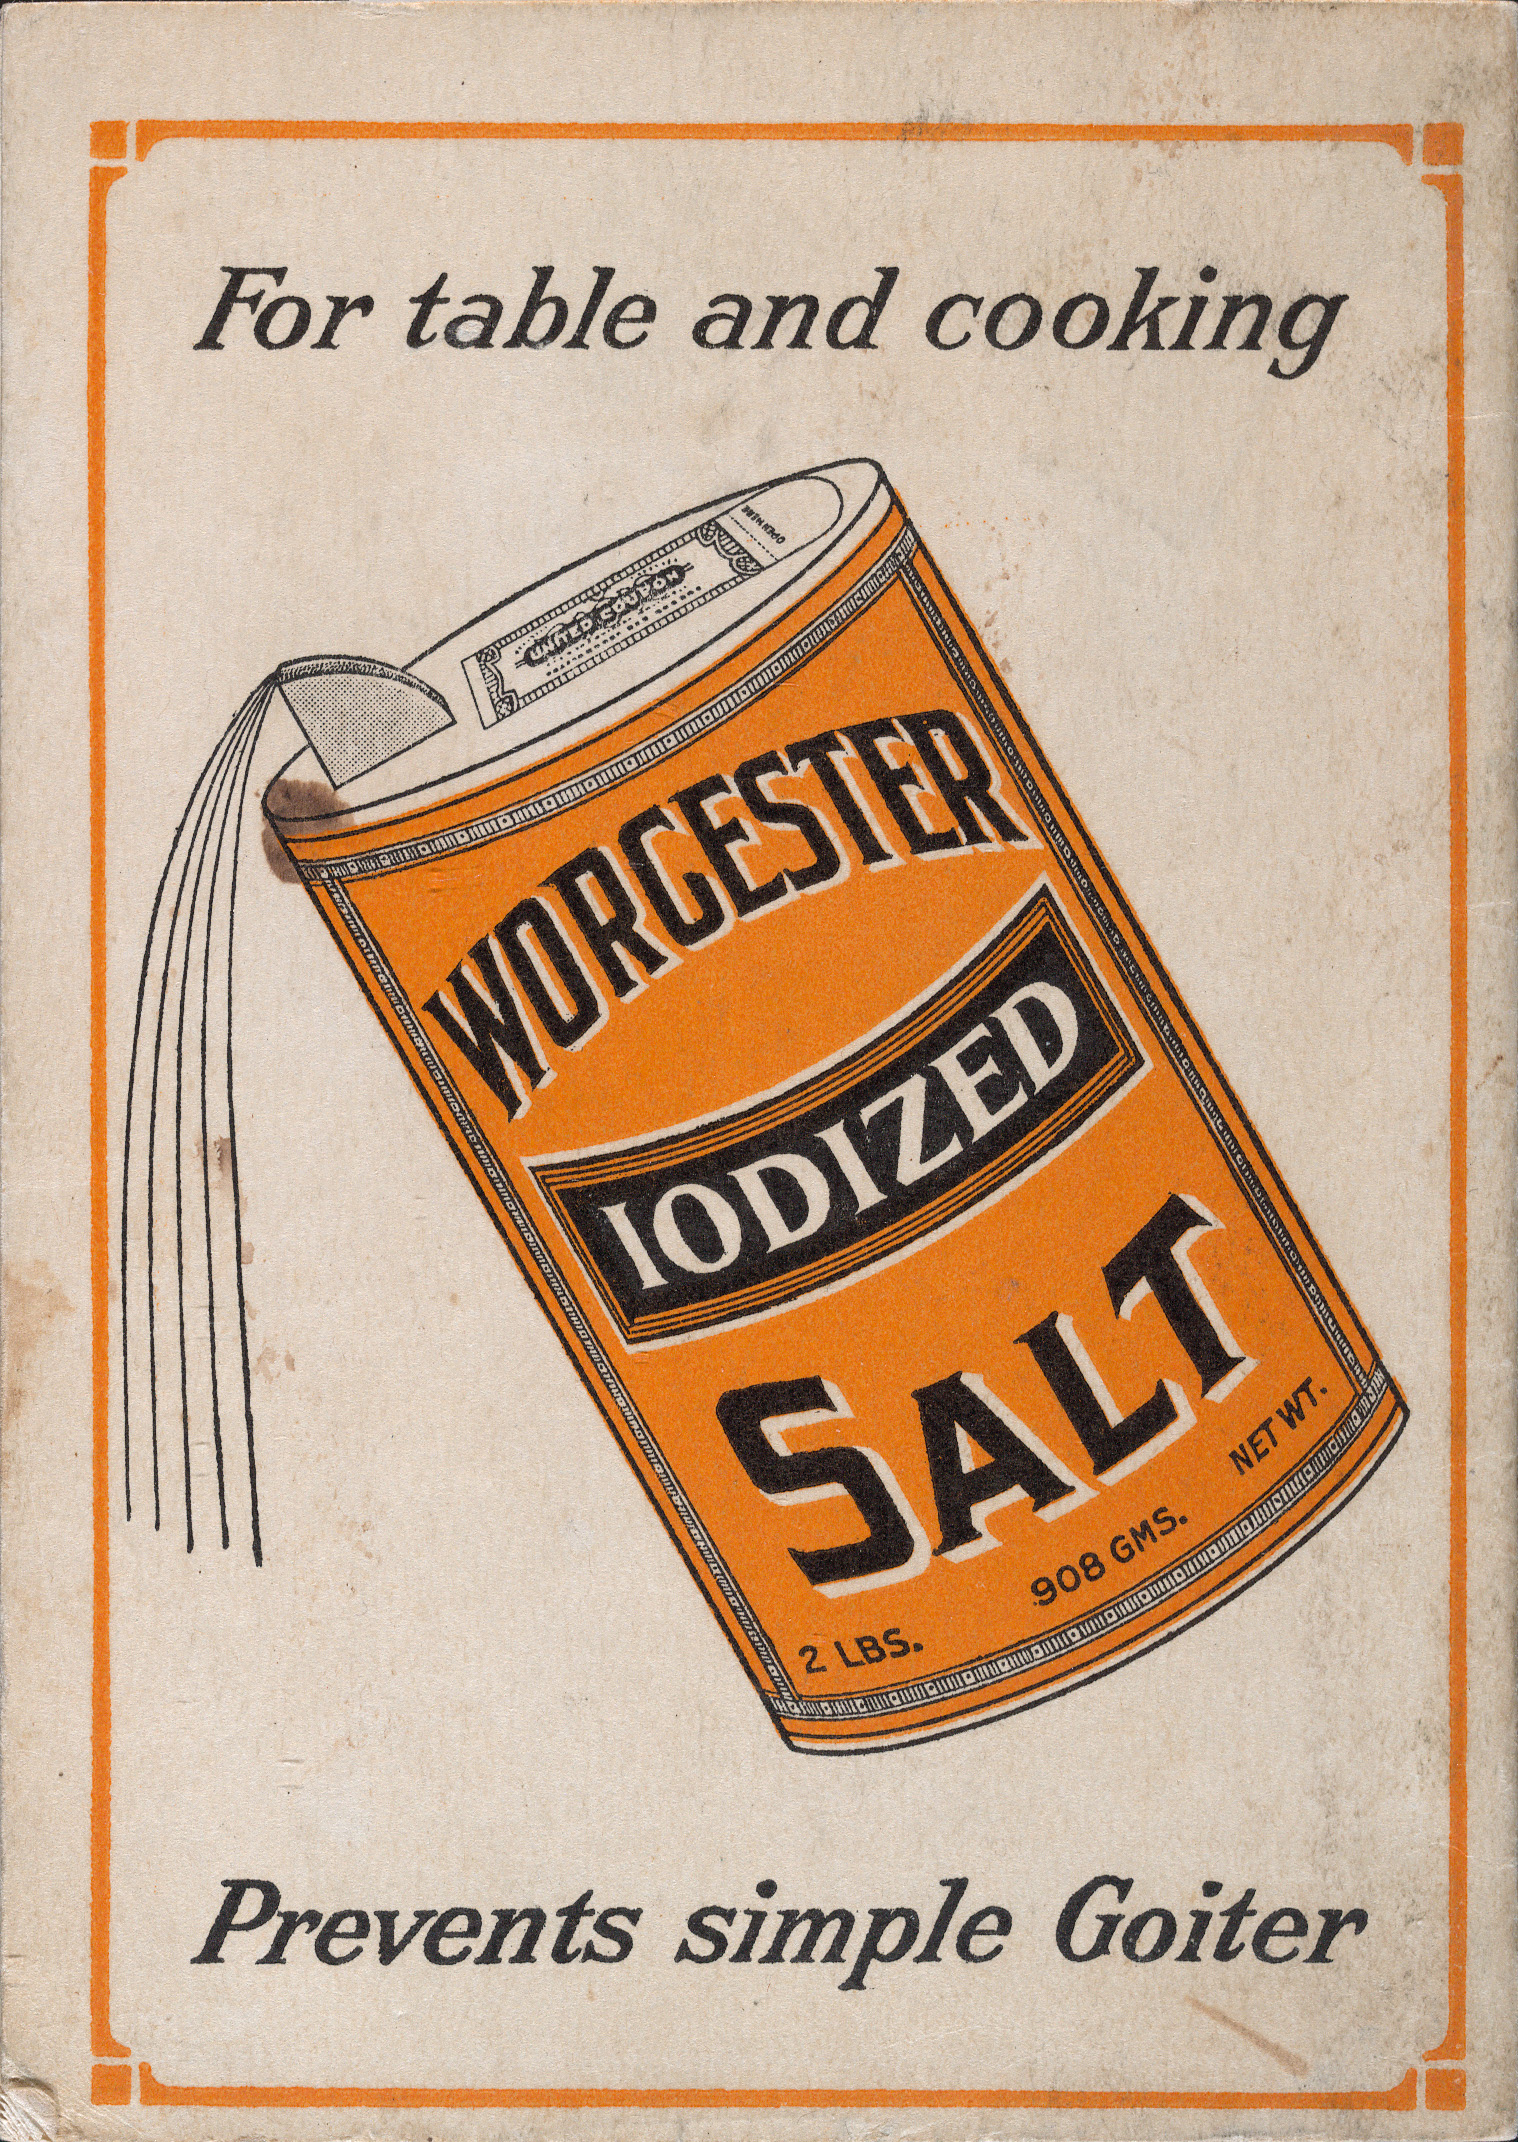 The Worcester Salt Cook Book. NY: Worcester Salt Co., n.d. 